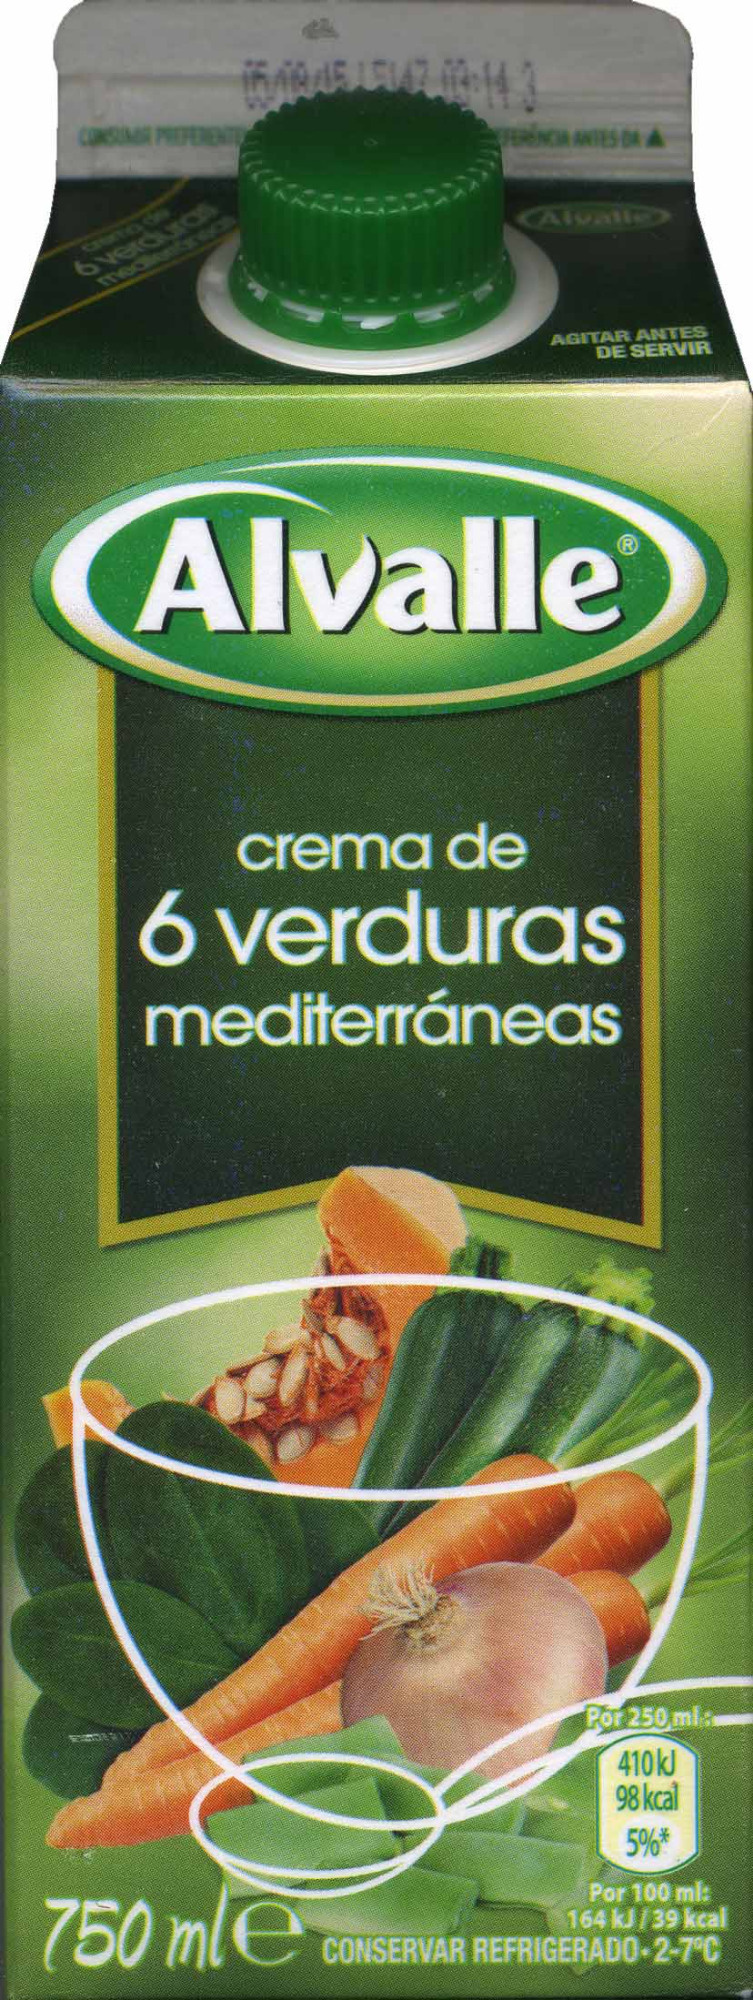 Crema de 6 verduras mediterráneas - Product - es